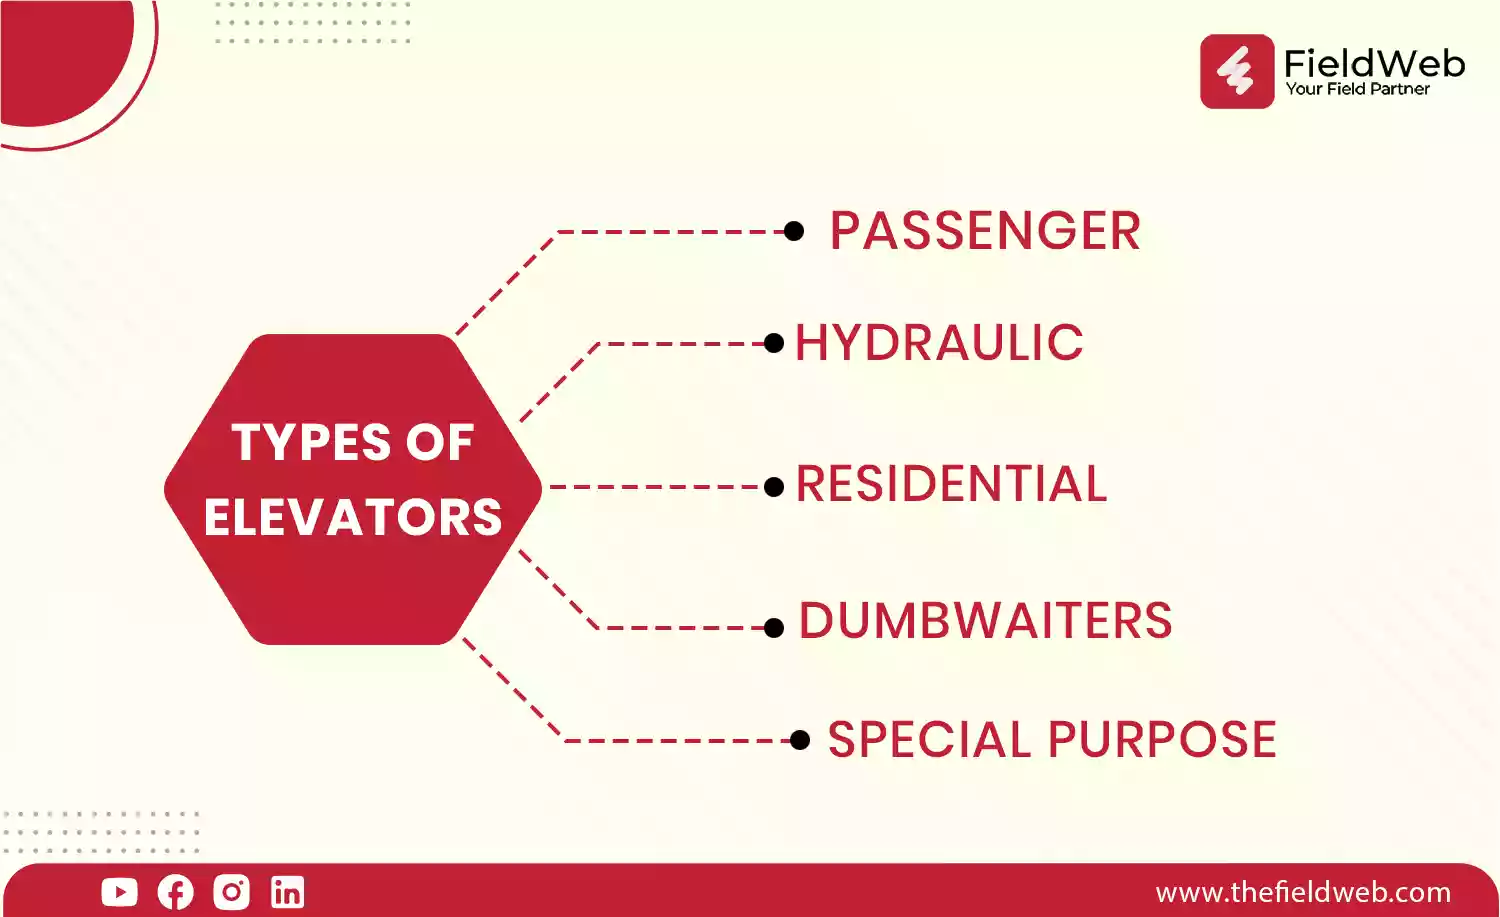 TYPES OF ELEVATORS